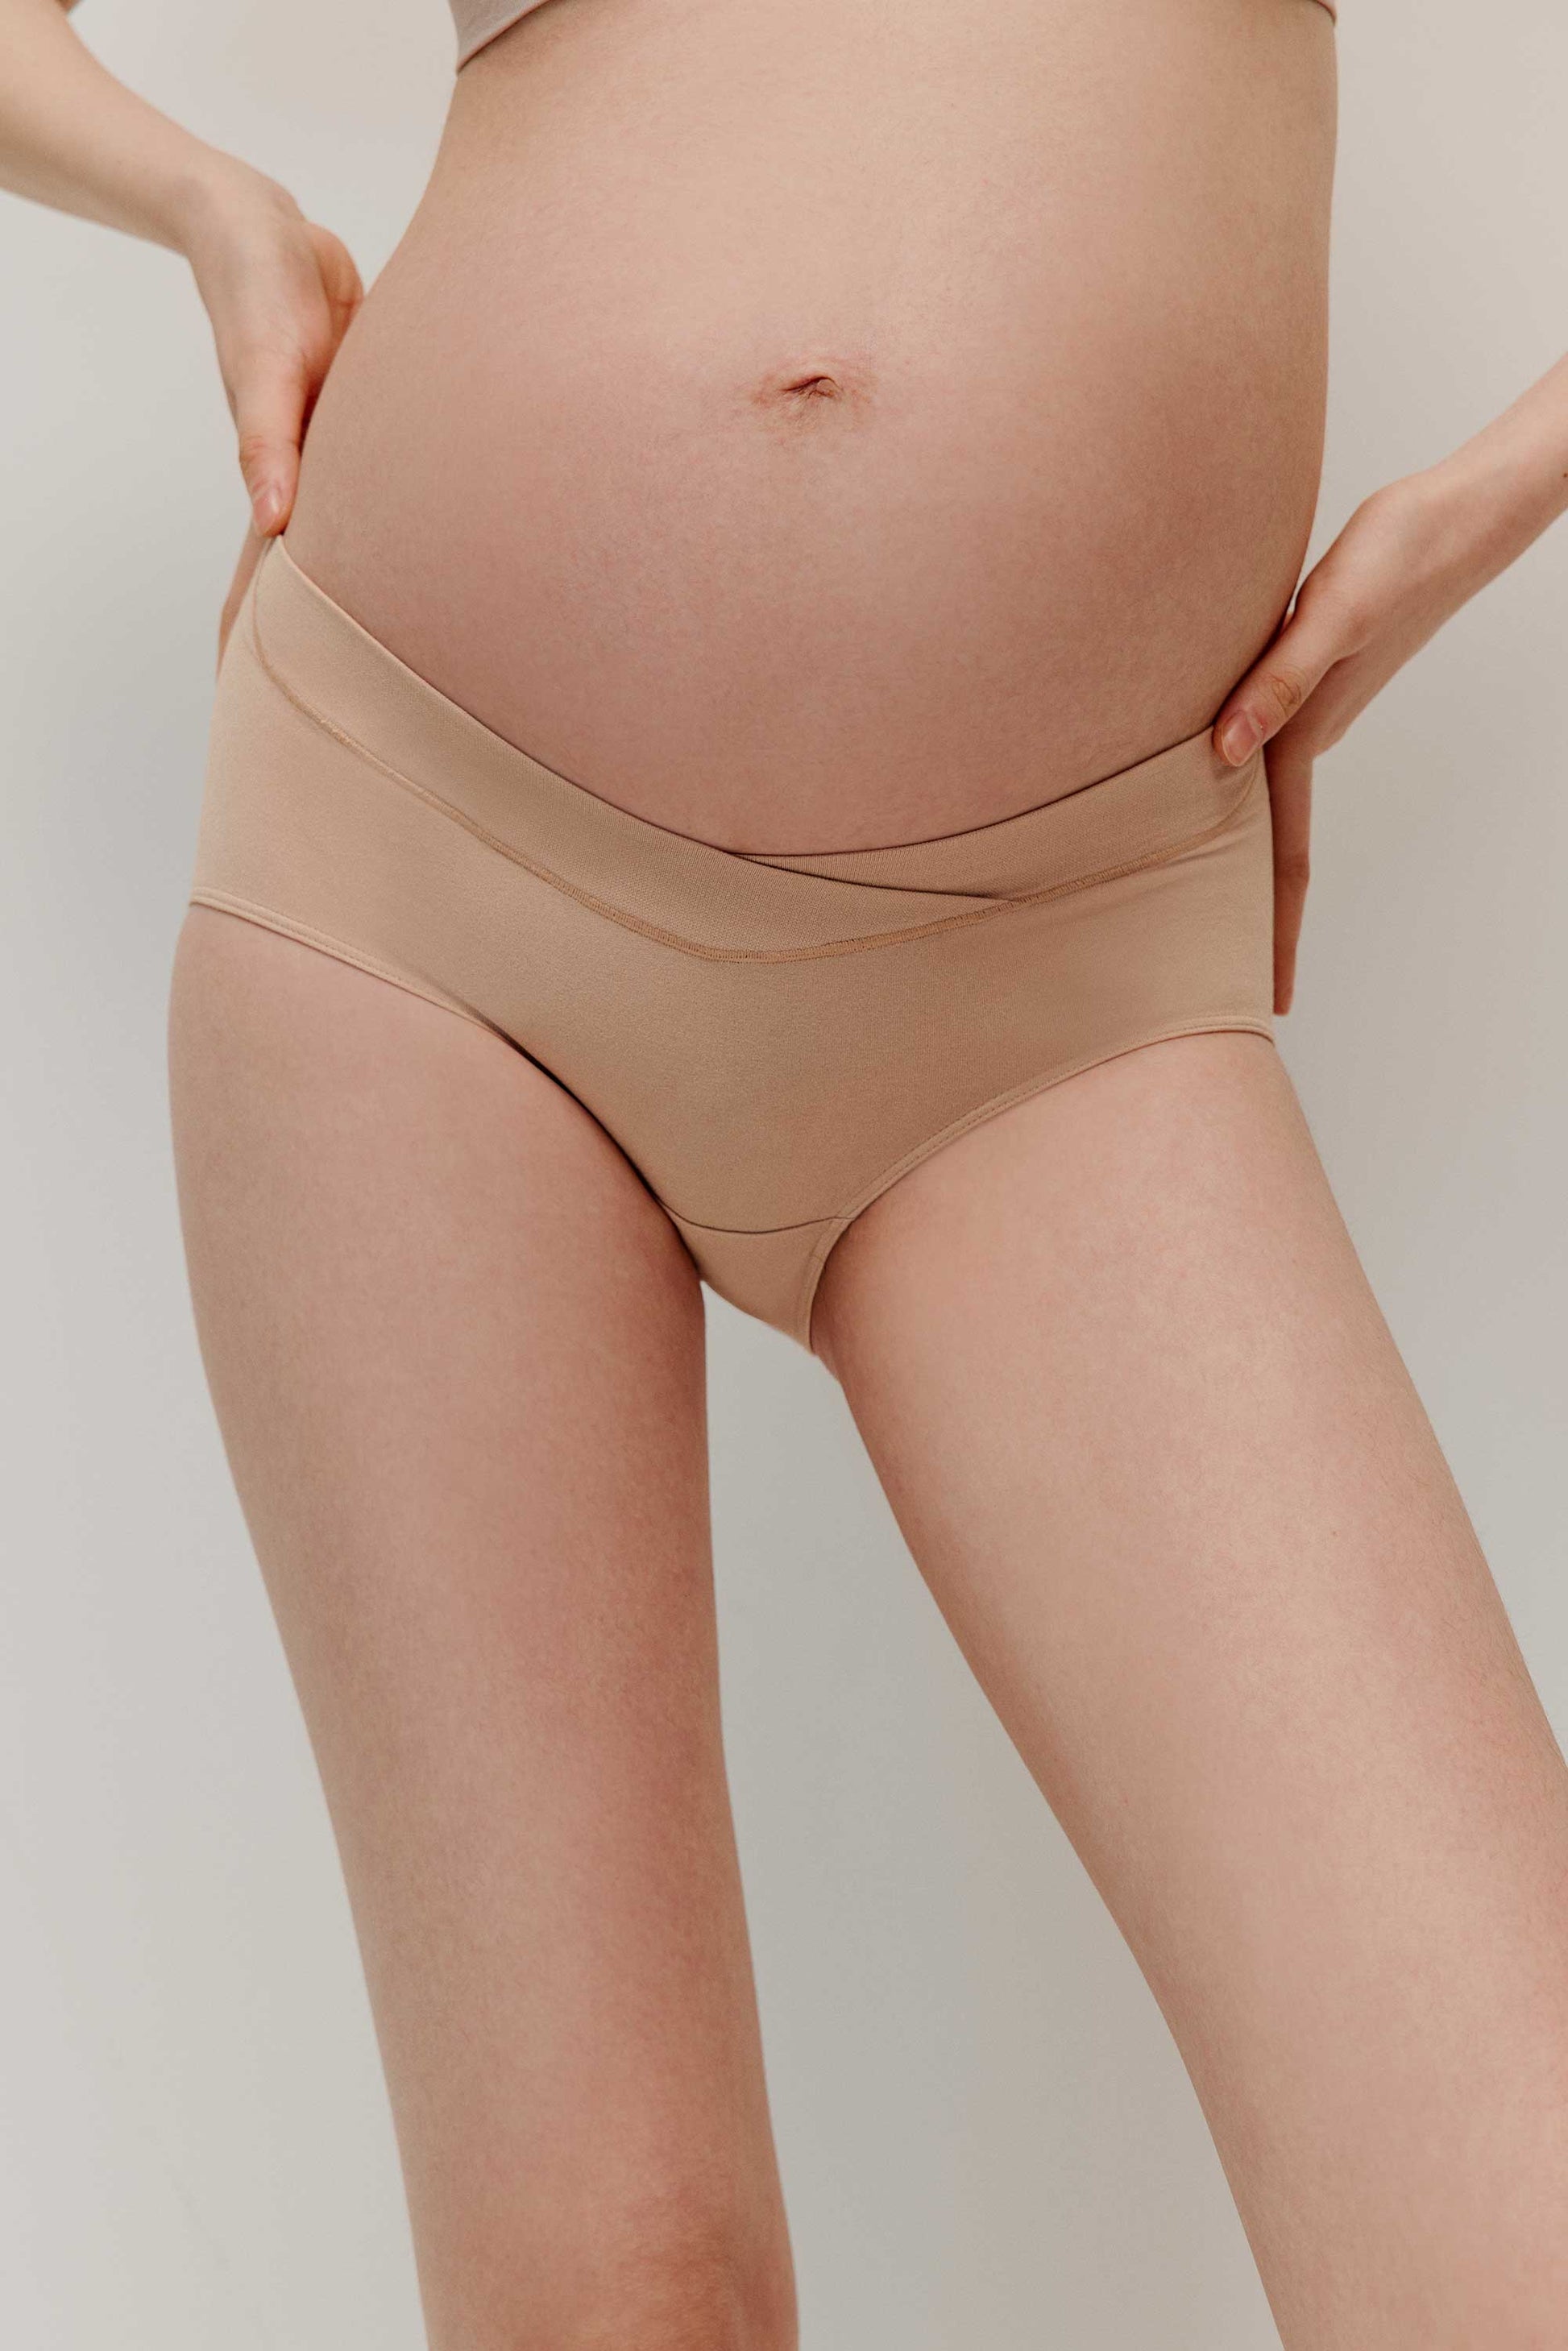 Pregnant Women Low Waist Briefs  Underwear Pregnant Women Belly